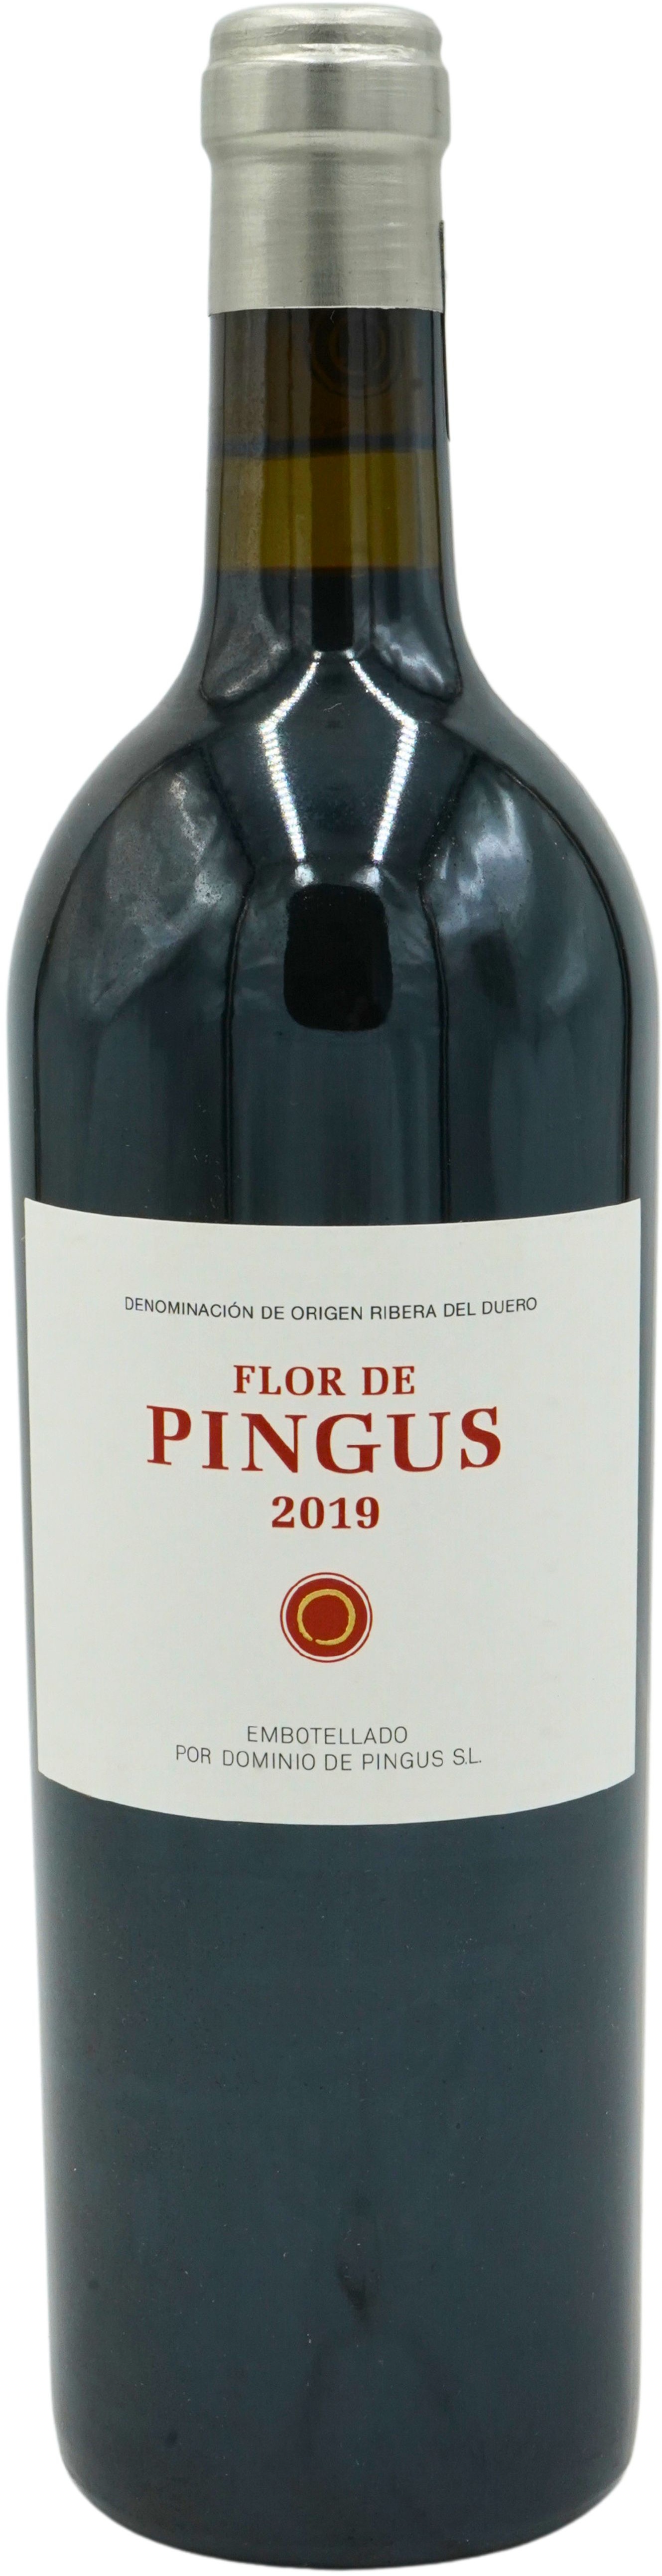 2019 Flor de Pingus